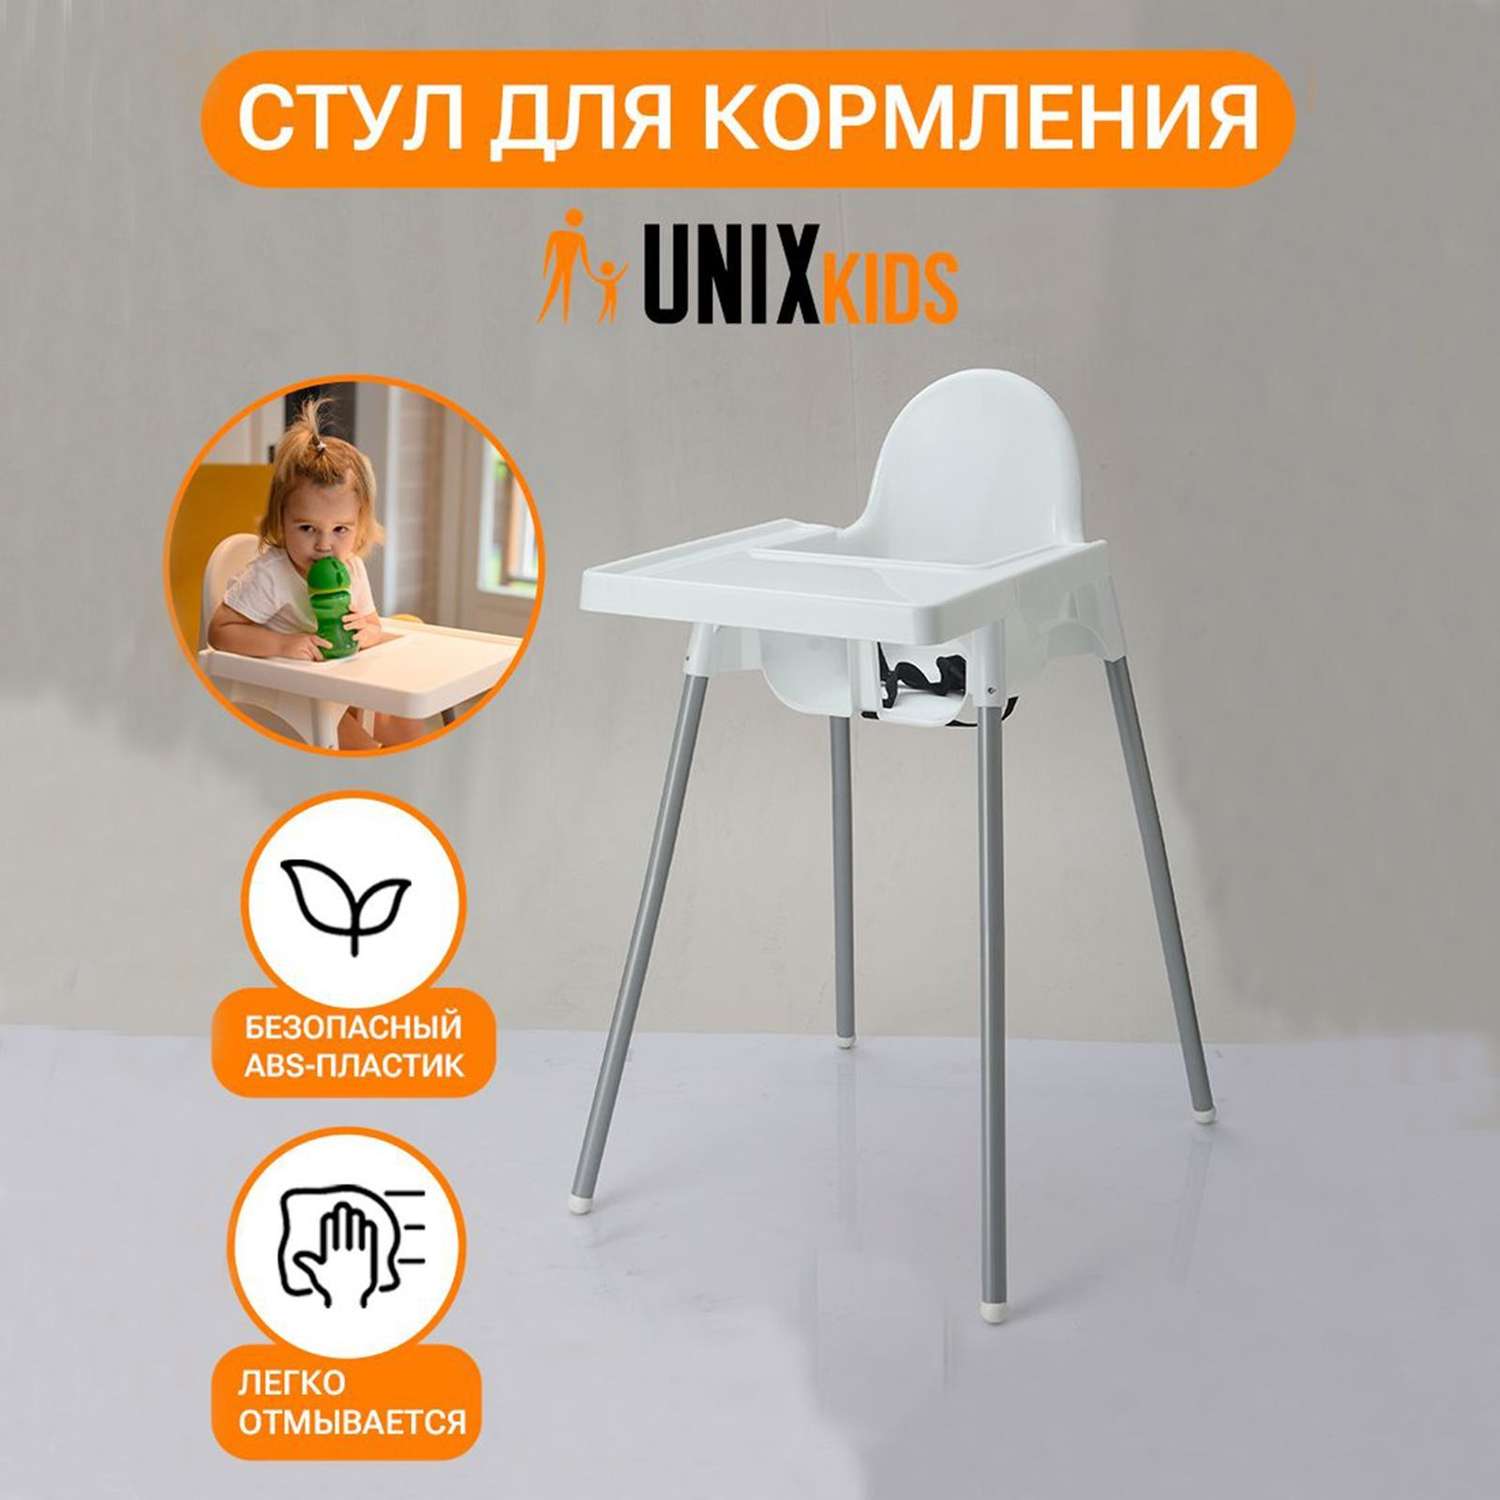 Стул для кормления UNIX Kids Fixed White аналог ИКЕА для кормления ребенка съемный столик ремень безопасности - фото 2